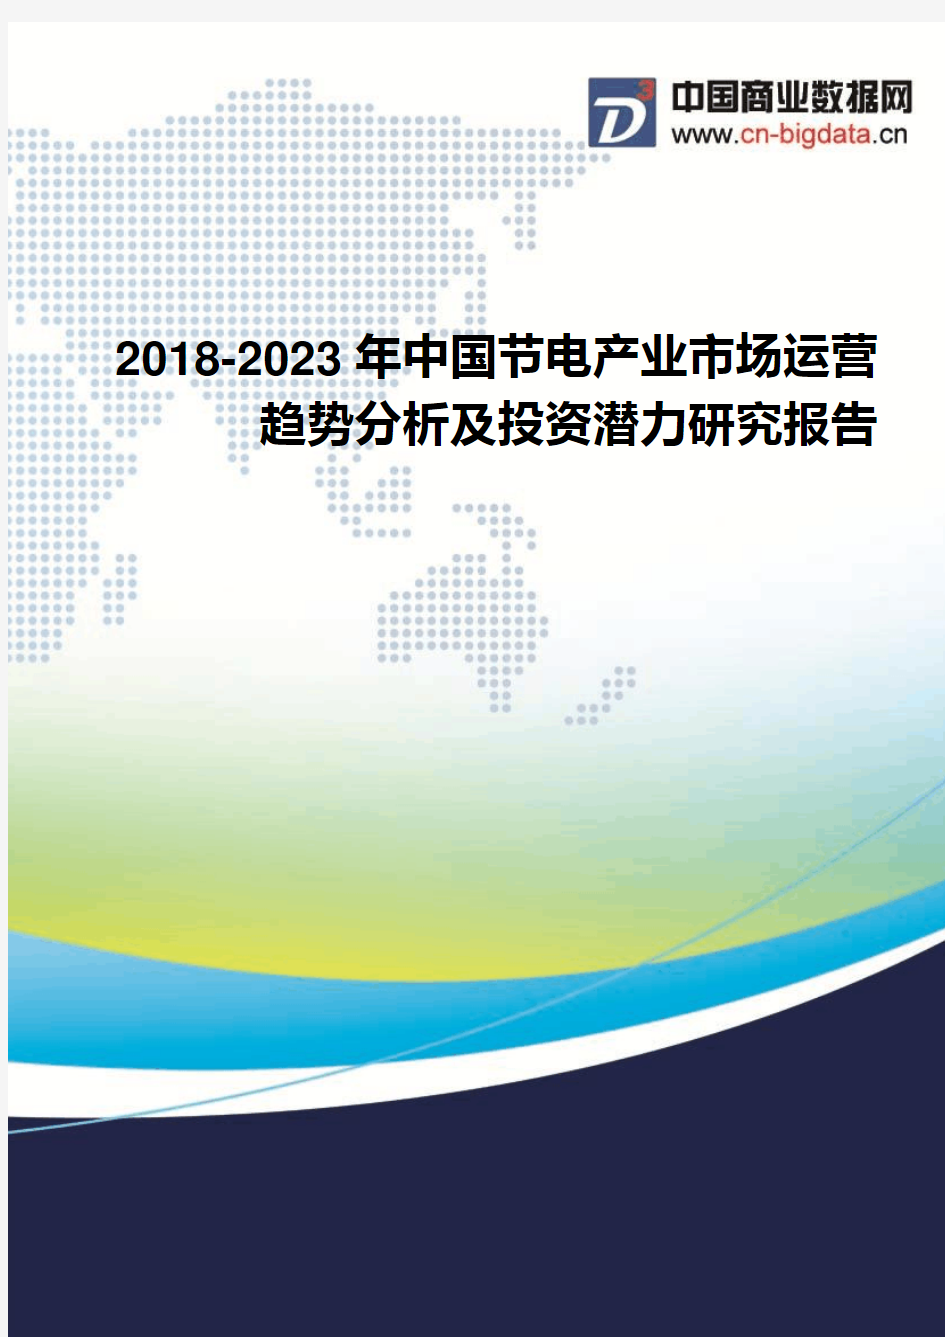 2018-2023年中国节电产业市场运营趋势分析及投资潜力研究报告-行业发展趋势分析